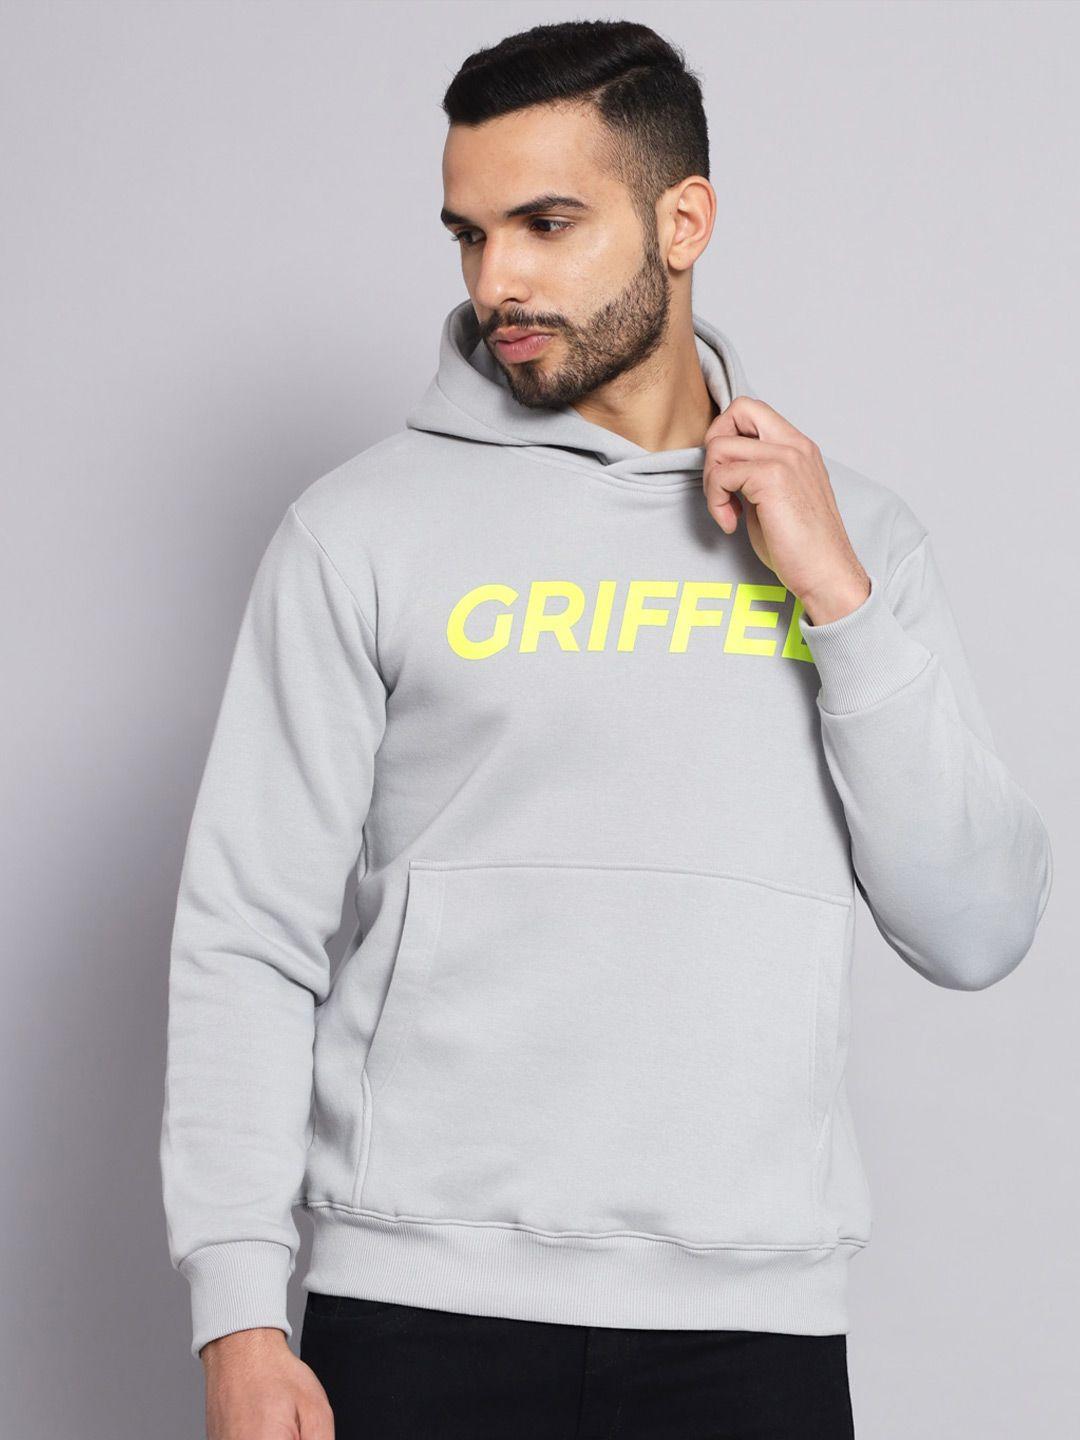 griffel men steel grey printed hooded sweatshirt